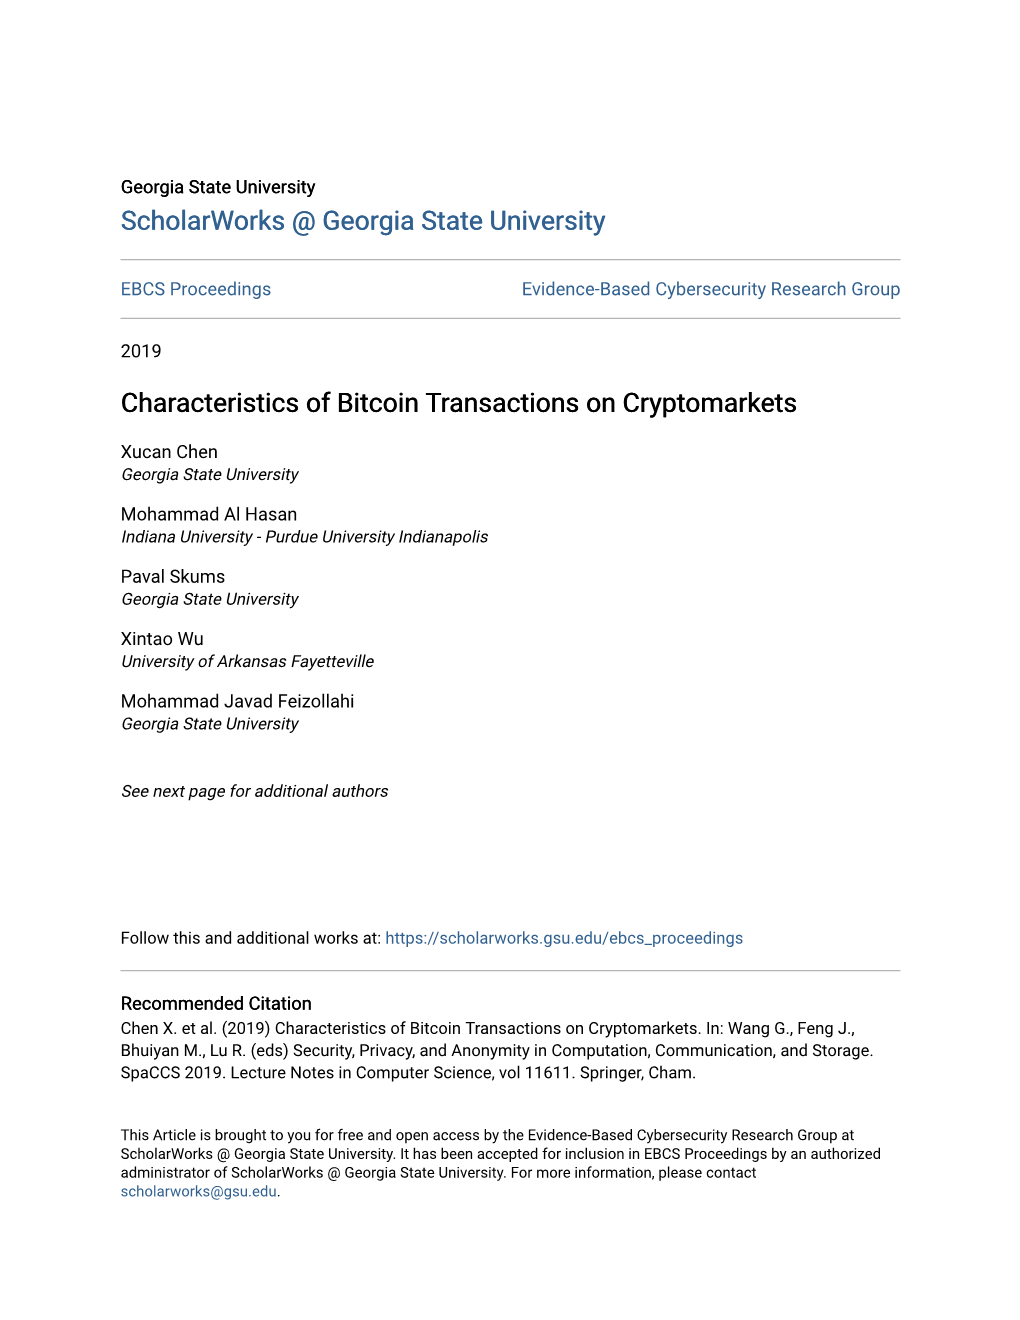 Characteristics of Bitcoin Transactions on Cryptomarkets